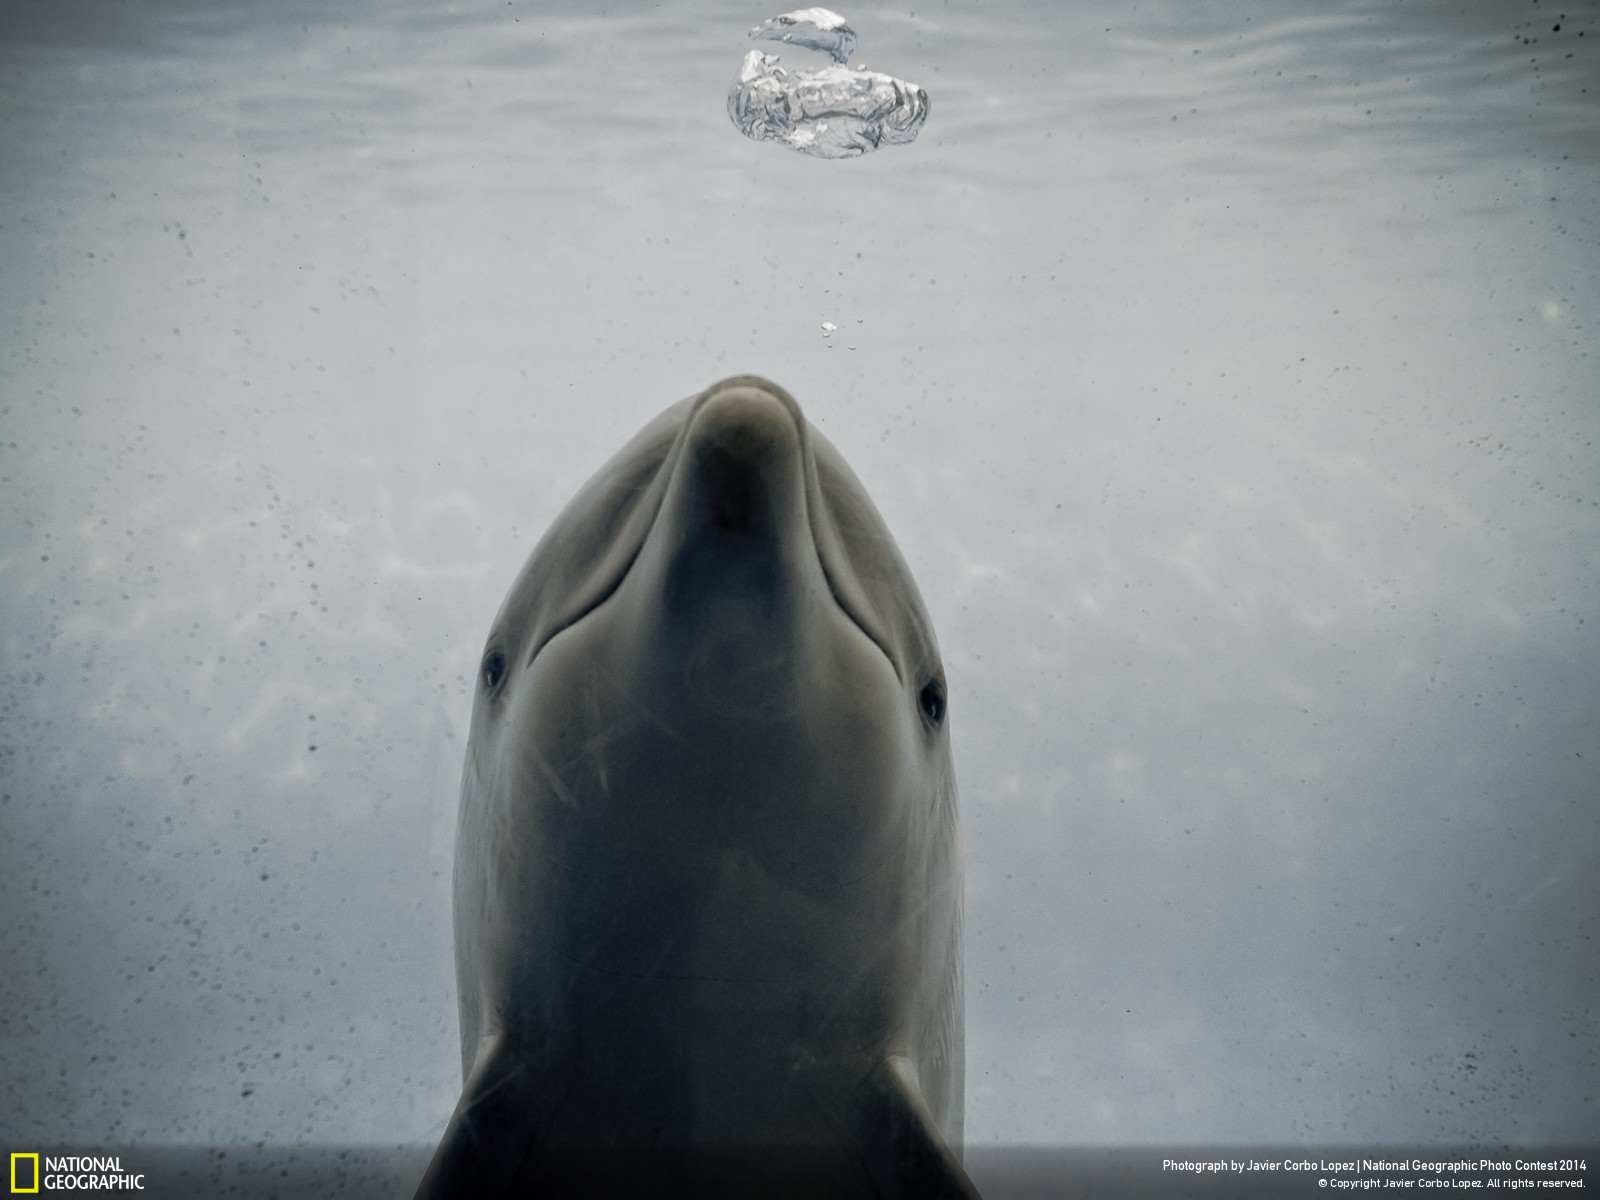 Скачать обои бесплатно Животные, Дельфин картинка на рабочий стол ПК